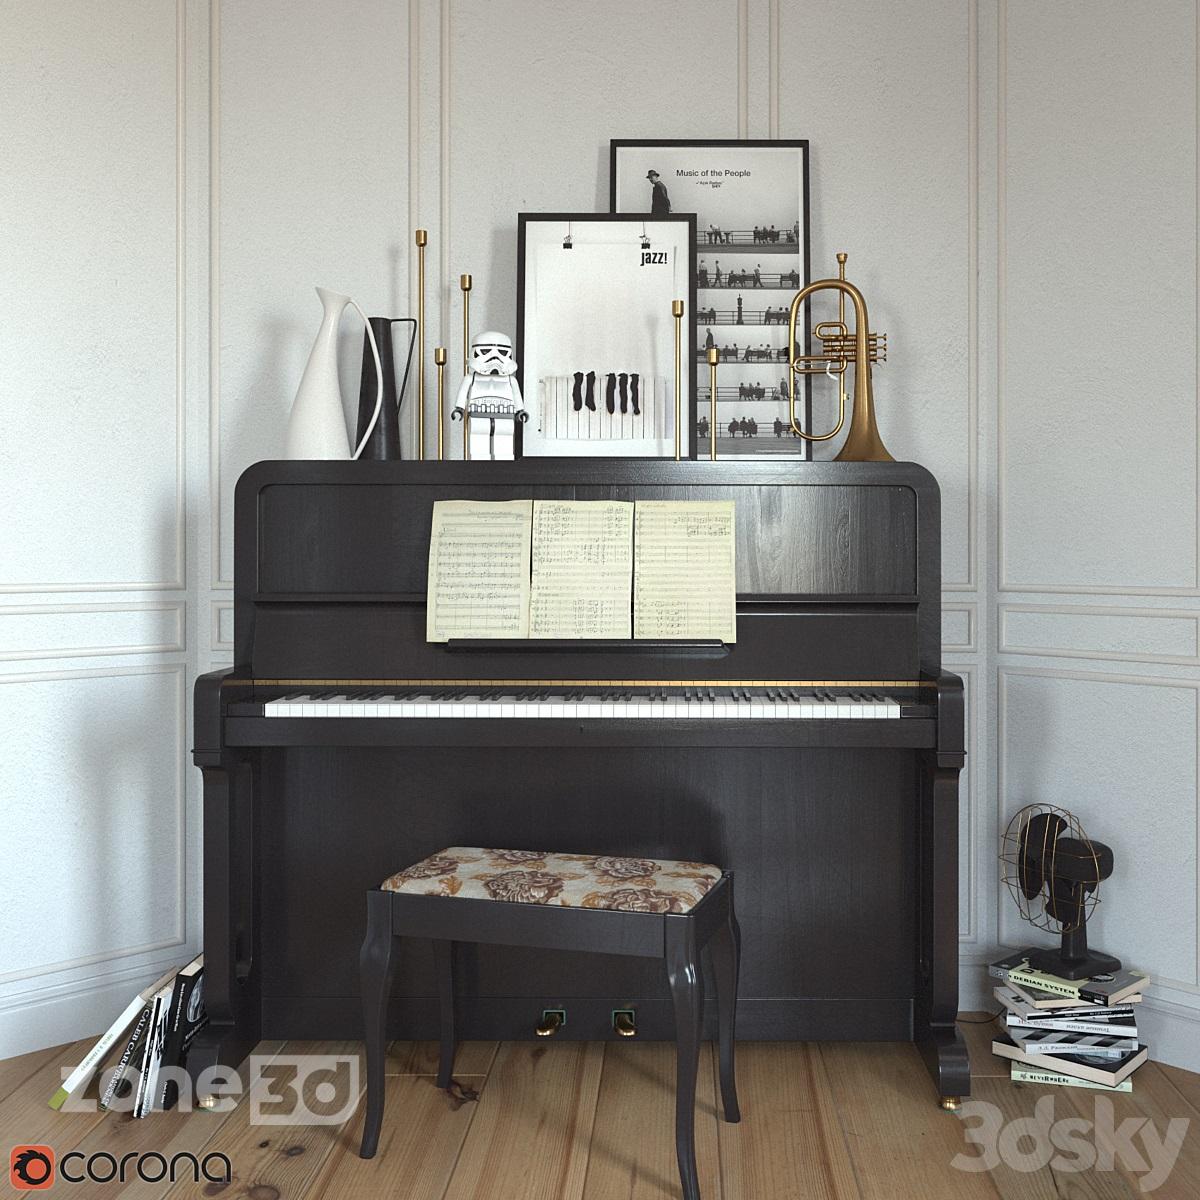 آبجکت ست پیانو مشکی به همراه صندلی چوبی و پارچه ای با فلوگل هورن